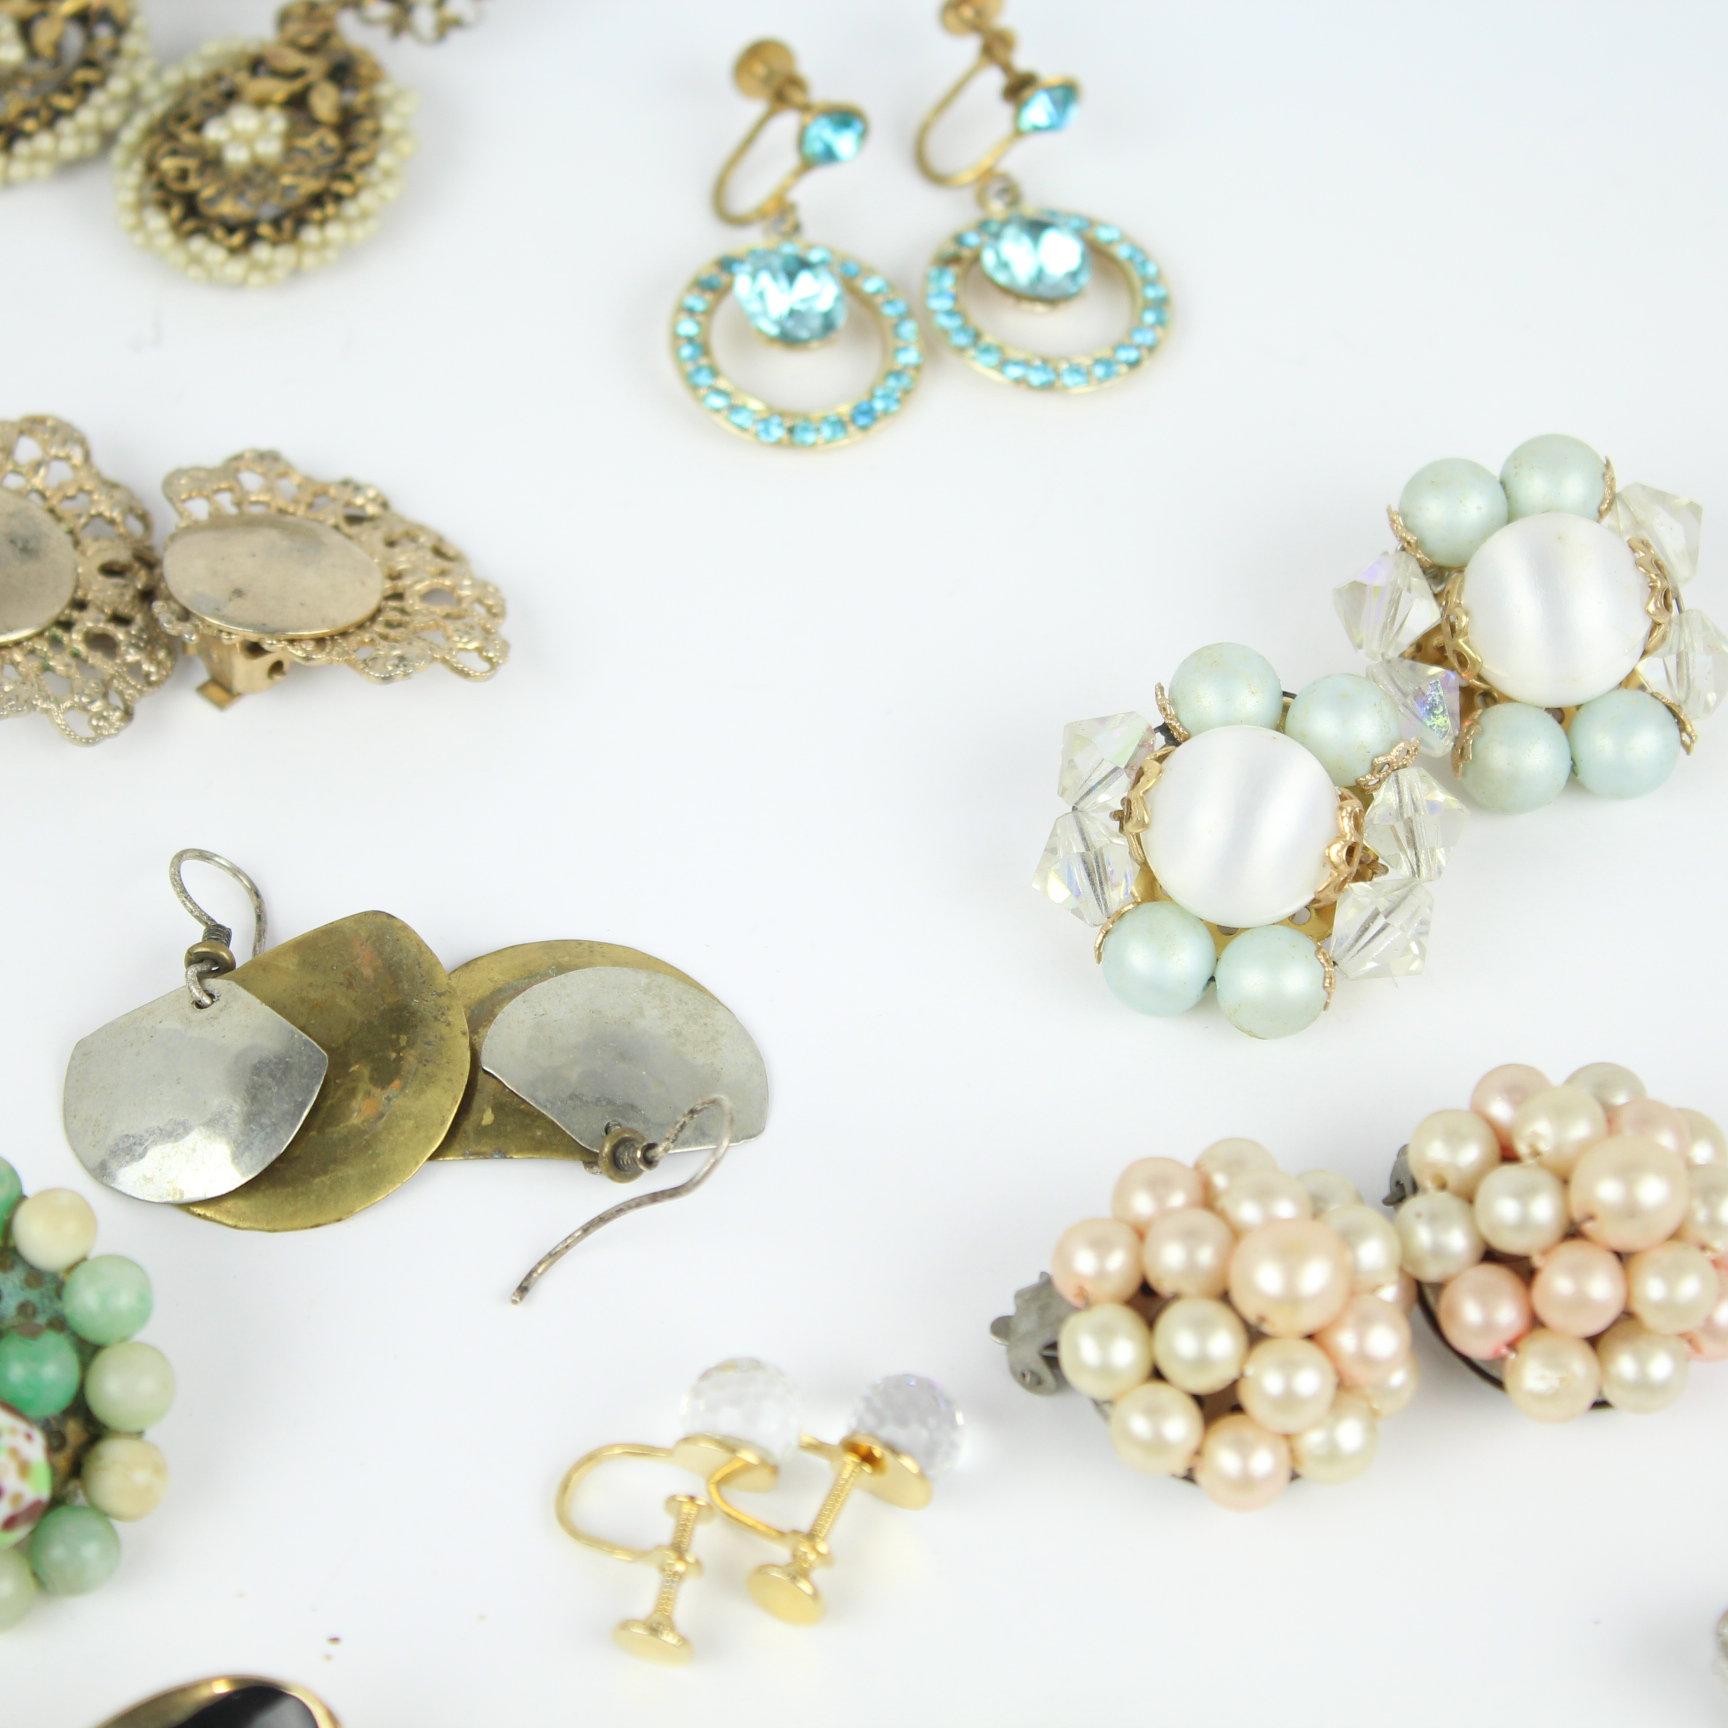 20 Pair of Vintage to Now Ladies Costume Jewelry Earrings